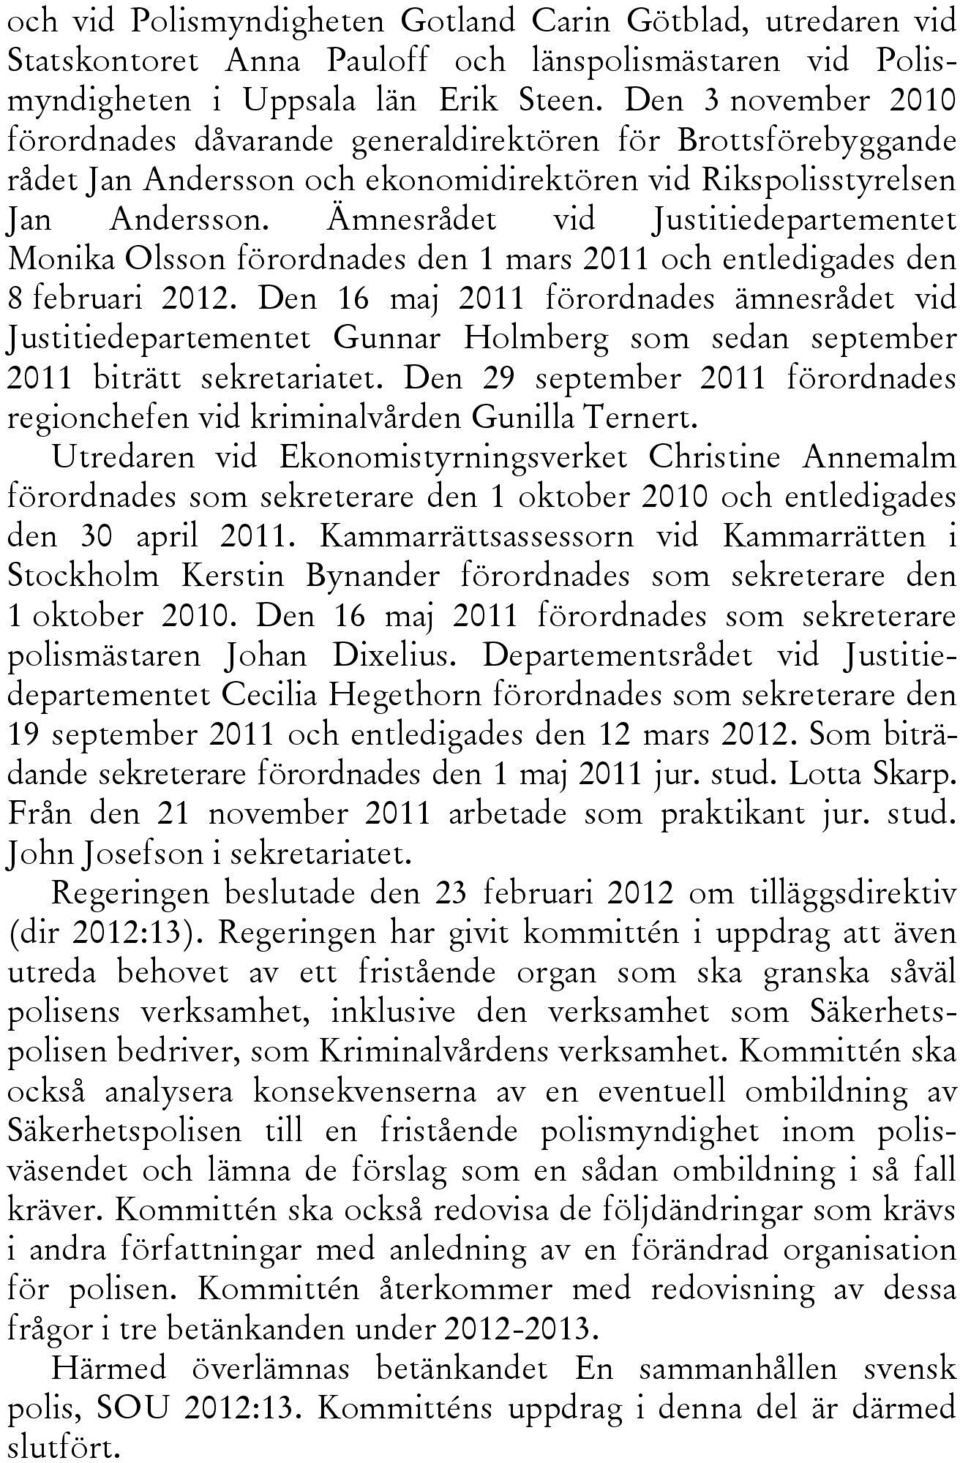 Ämnesrådet vid Justitiedepartementet Monika Olsson förordnades den 1 mars 2011 och entledigades den 8 februari 2012.